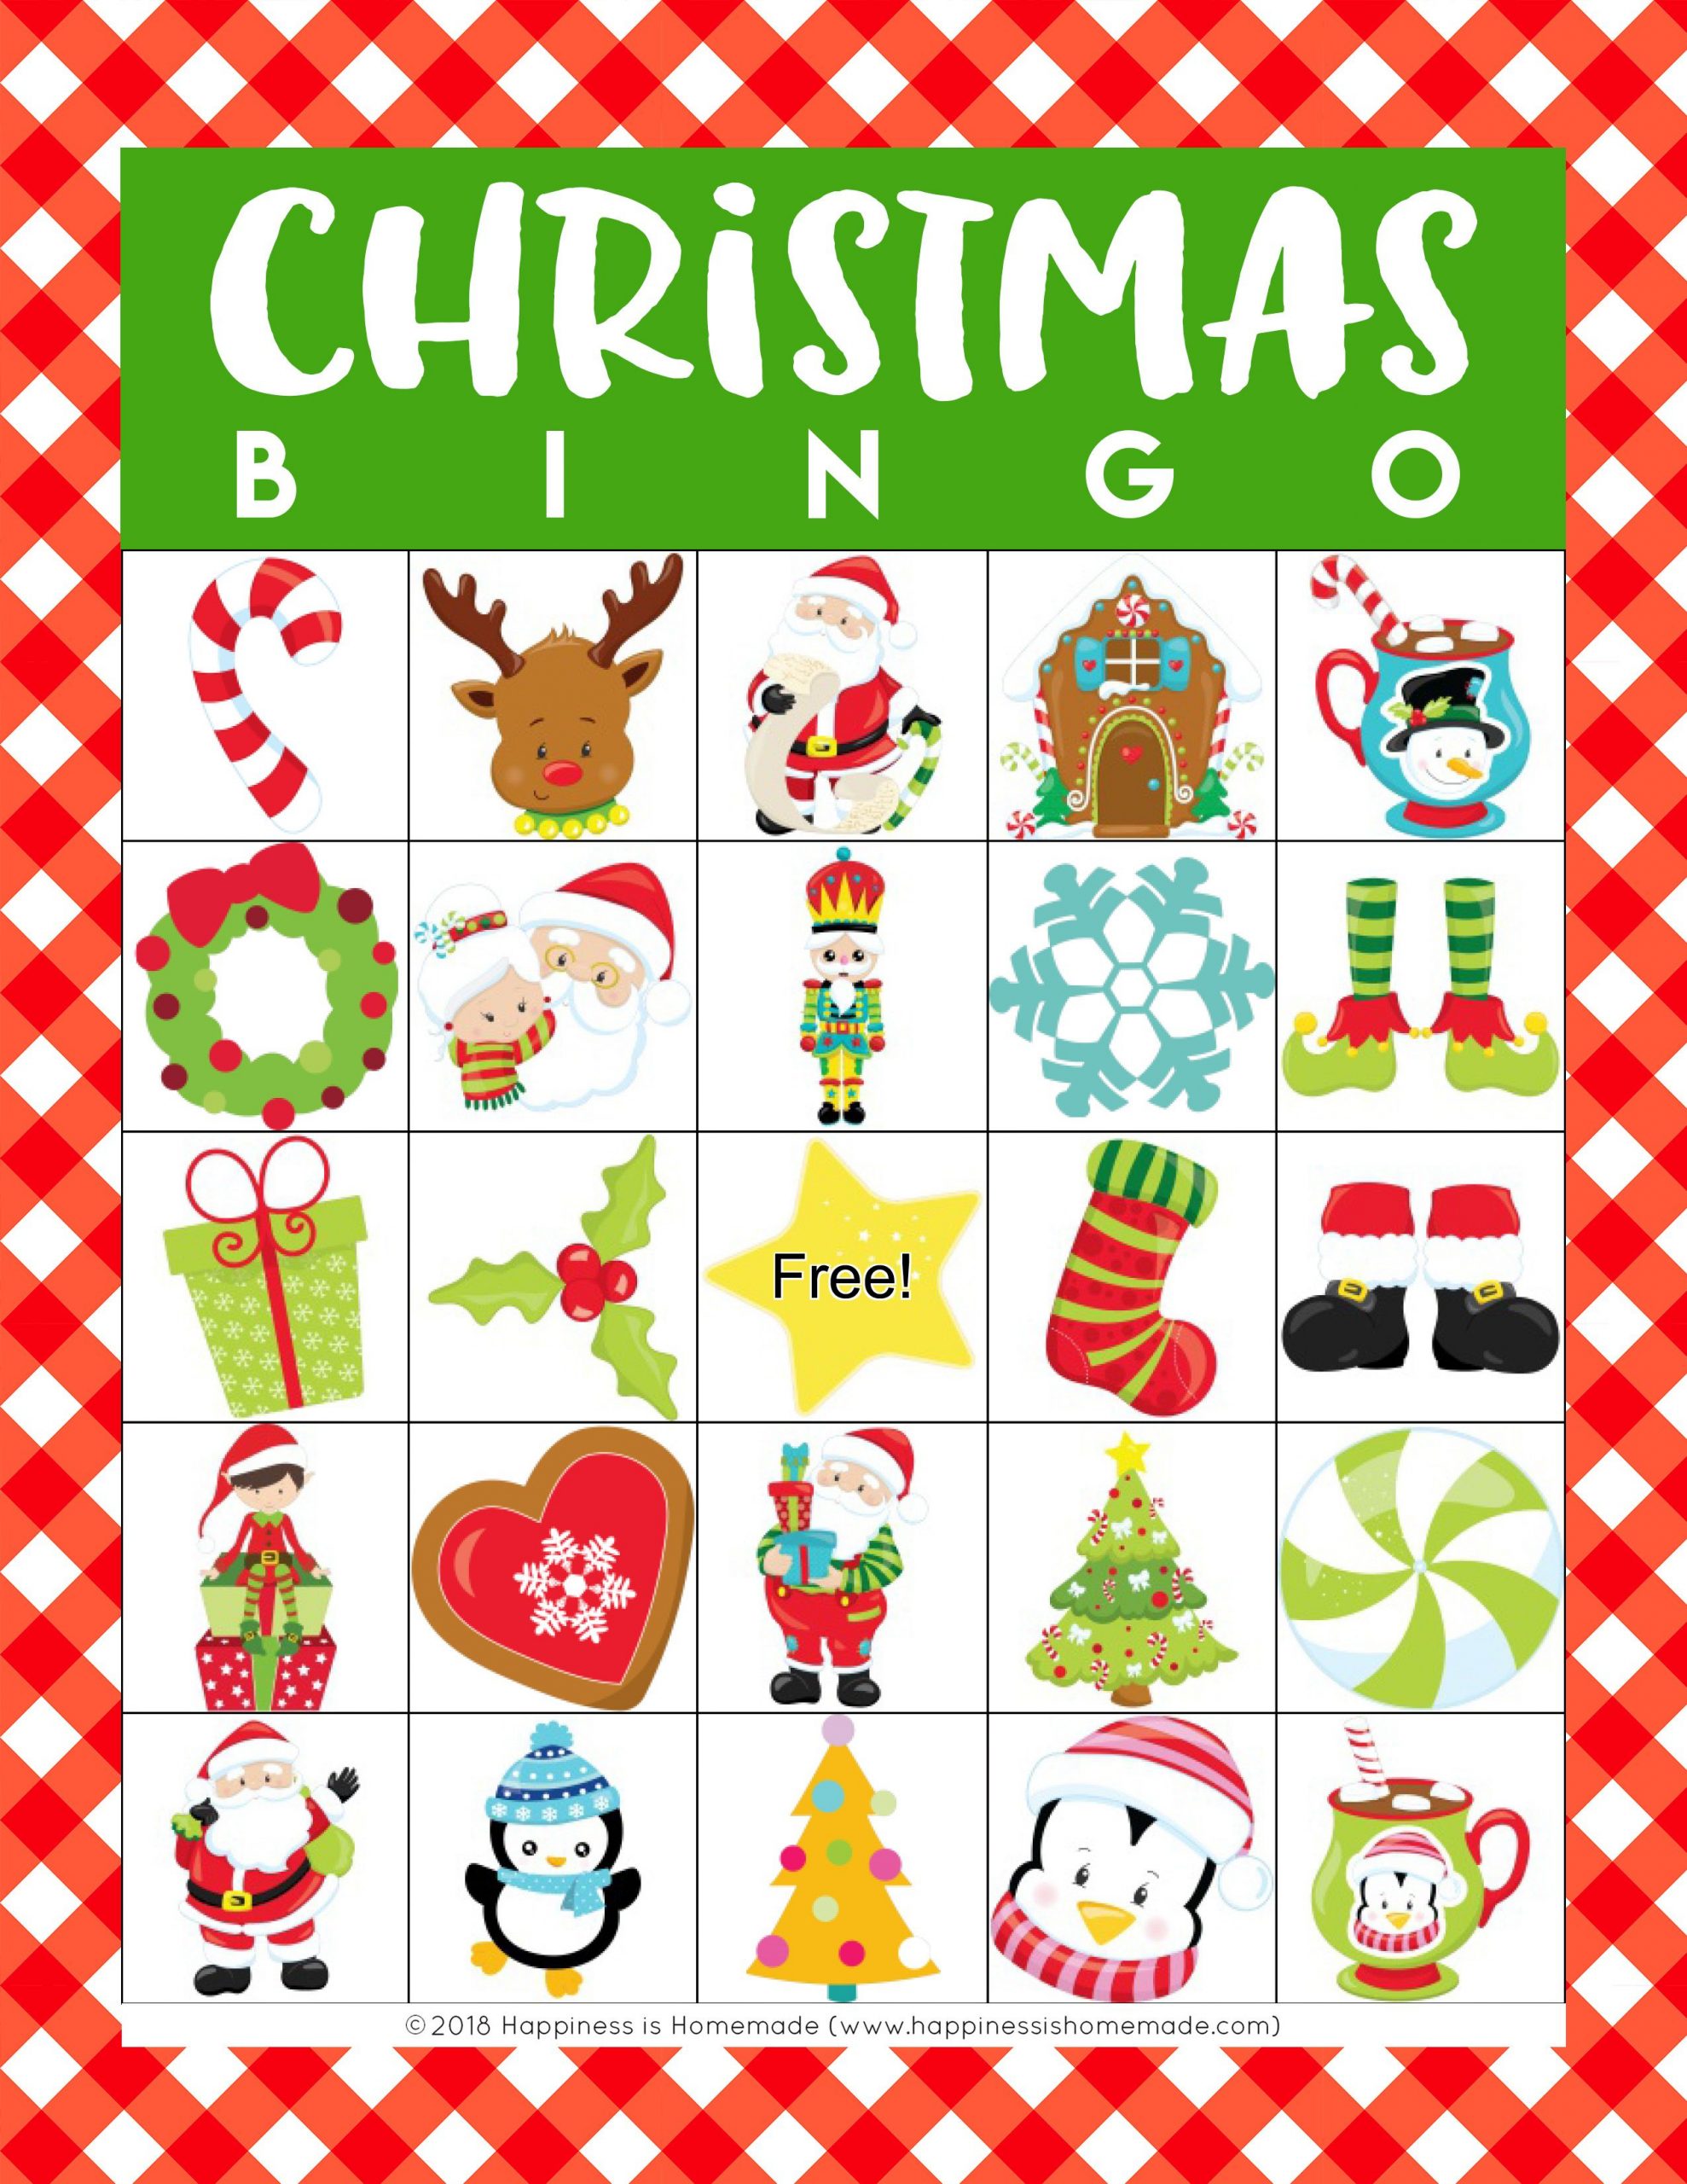 Christmas Bingo Game Printables - This Festive Christmas